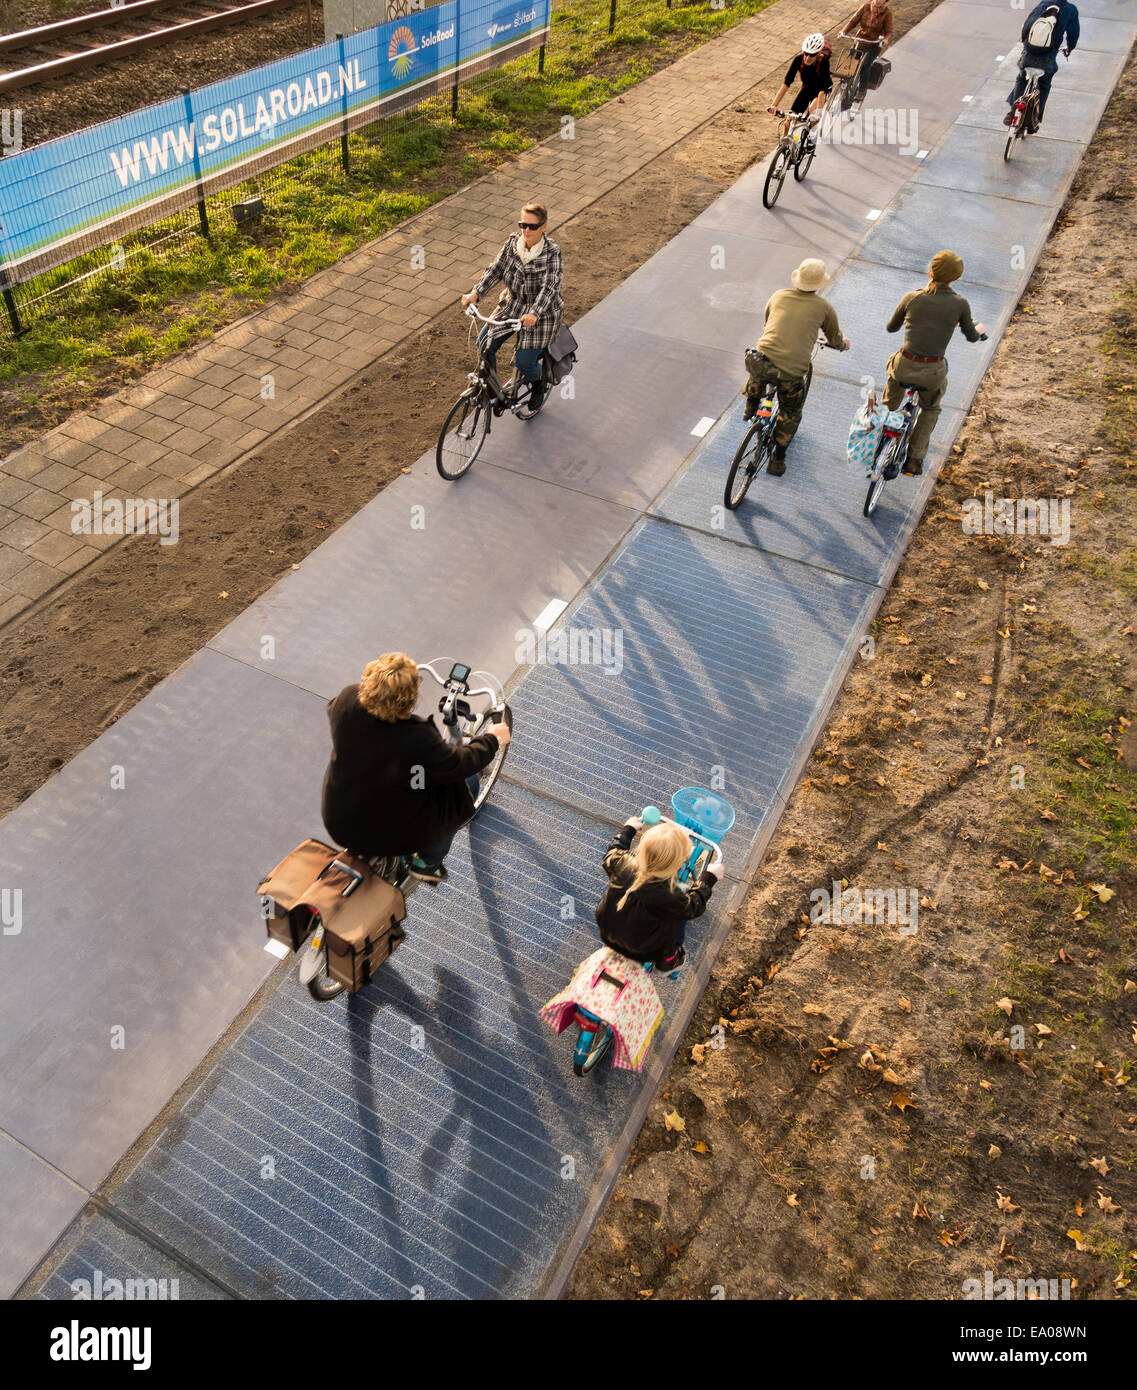 Paesi Bassi, Olanda, Krommenie, il primo al mondo pista ciclabile realizzata dalle celle solari con i ciclisti persone su occupato in bicicletta percorso in bicicletta. Foto Stock